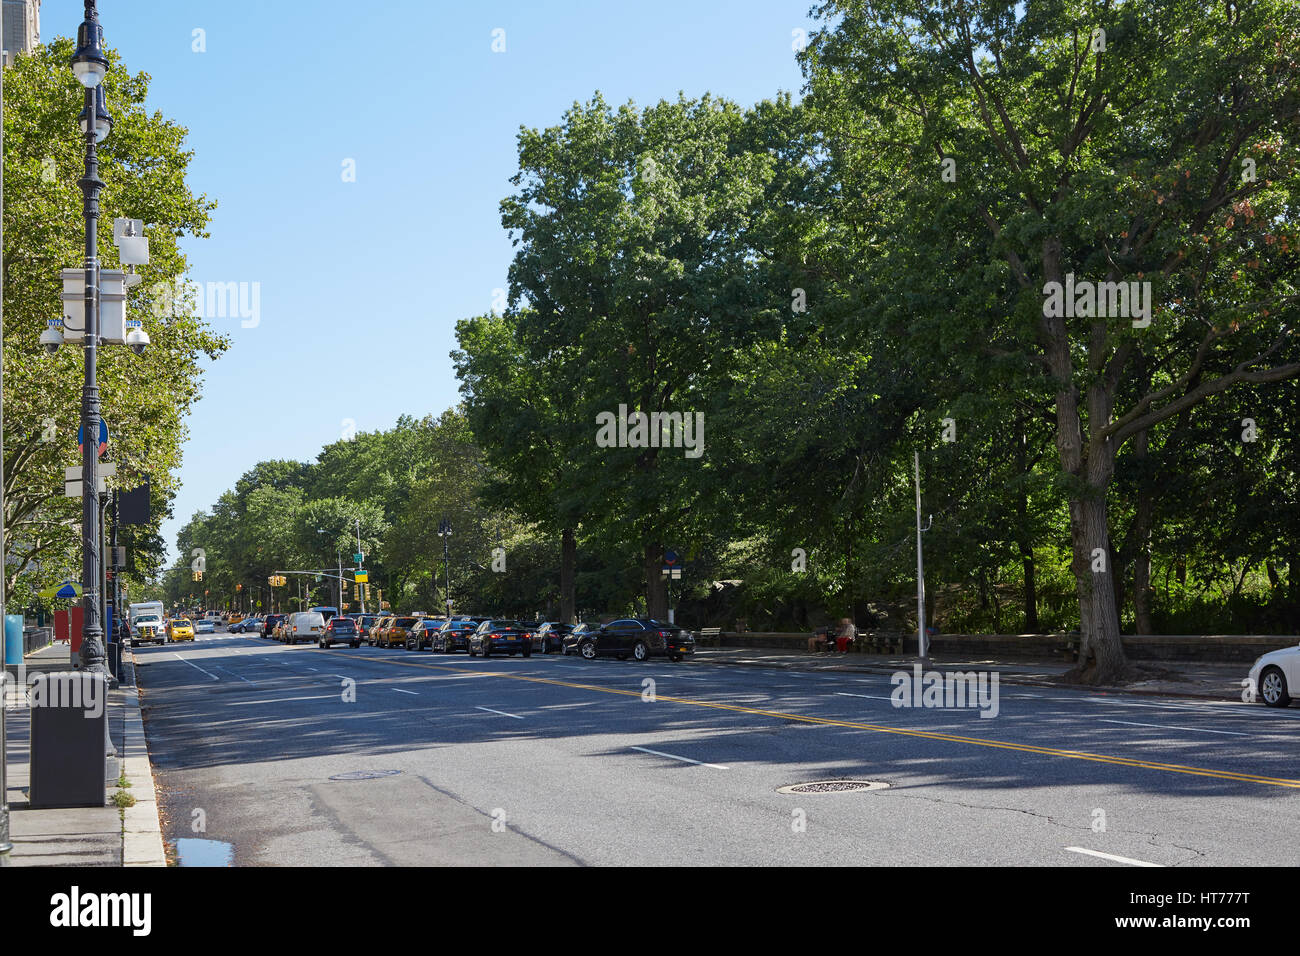 New York empty street vicino a Central Park, verde di alberi in una giornata di sole Foto Stock